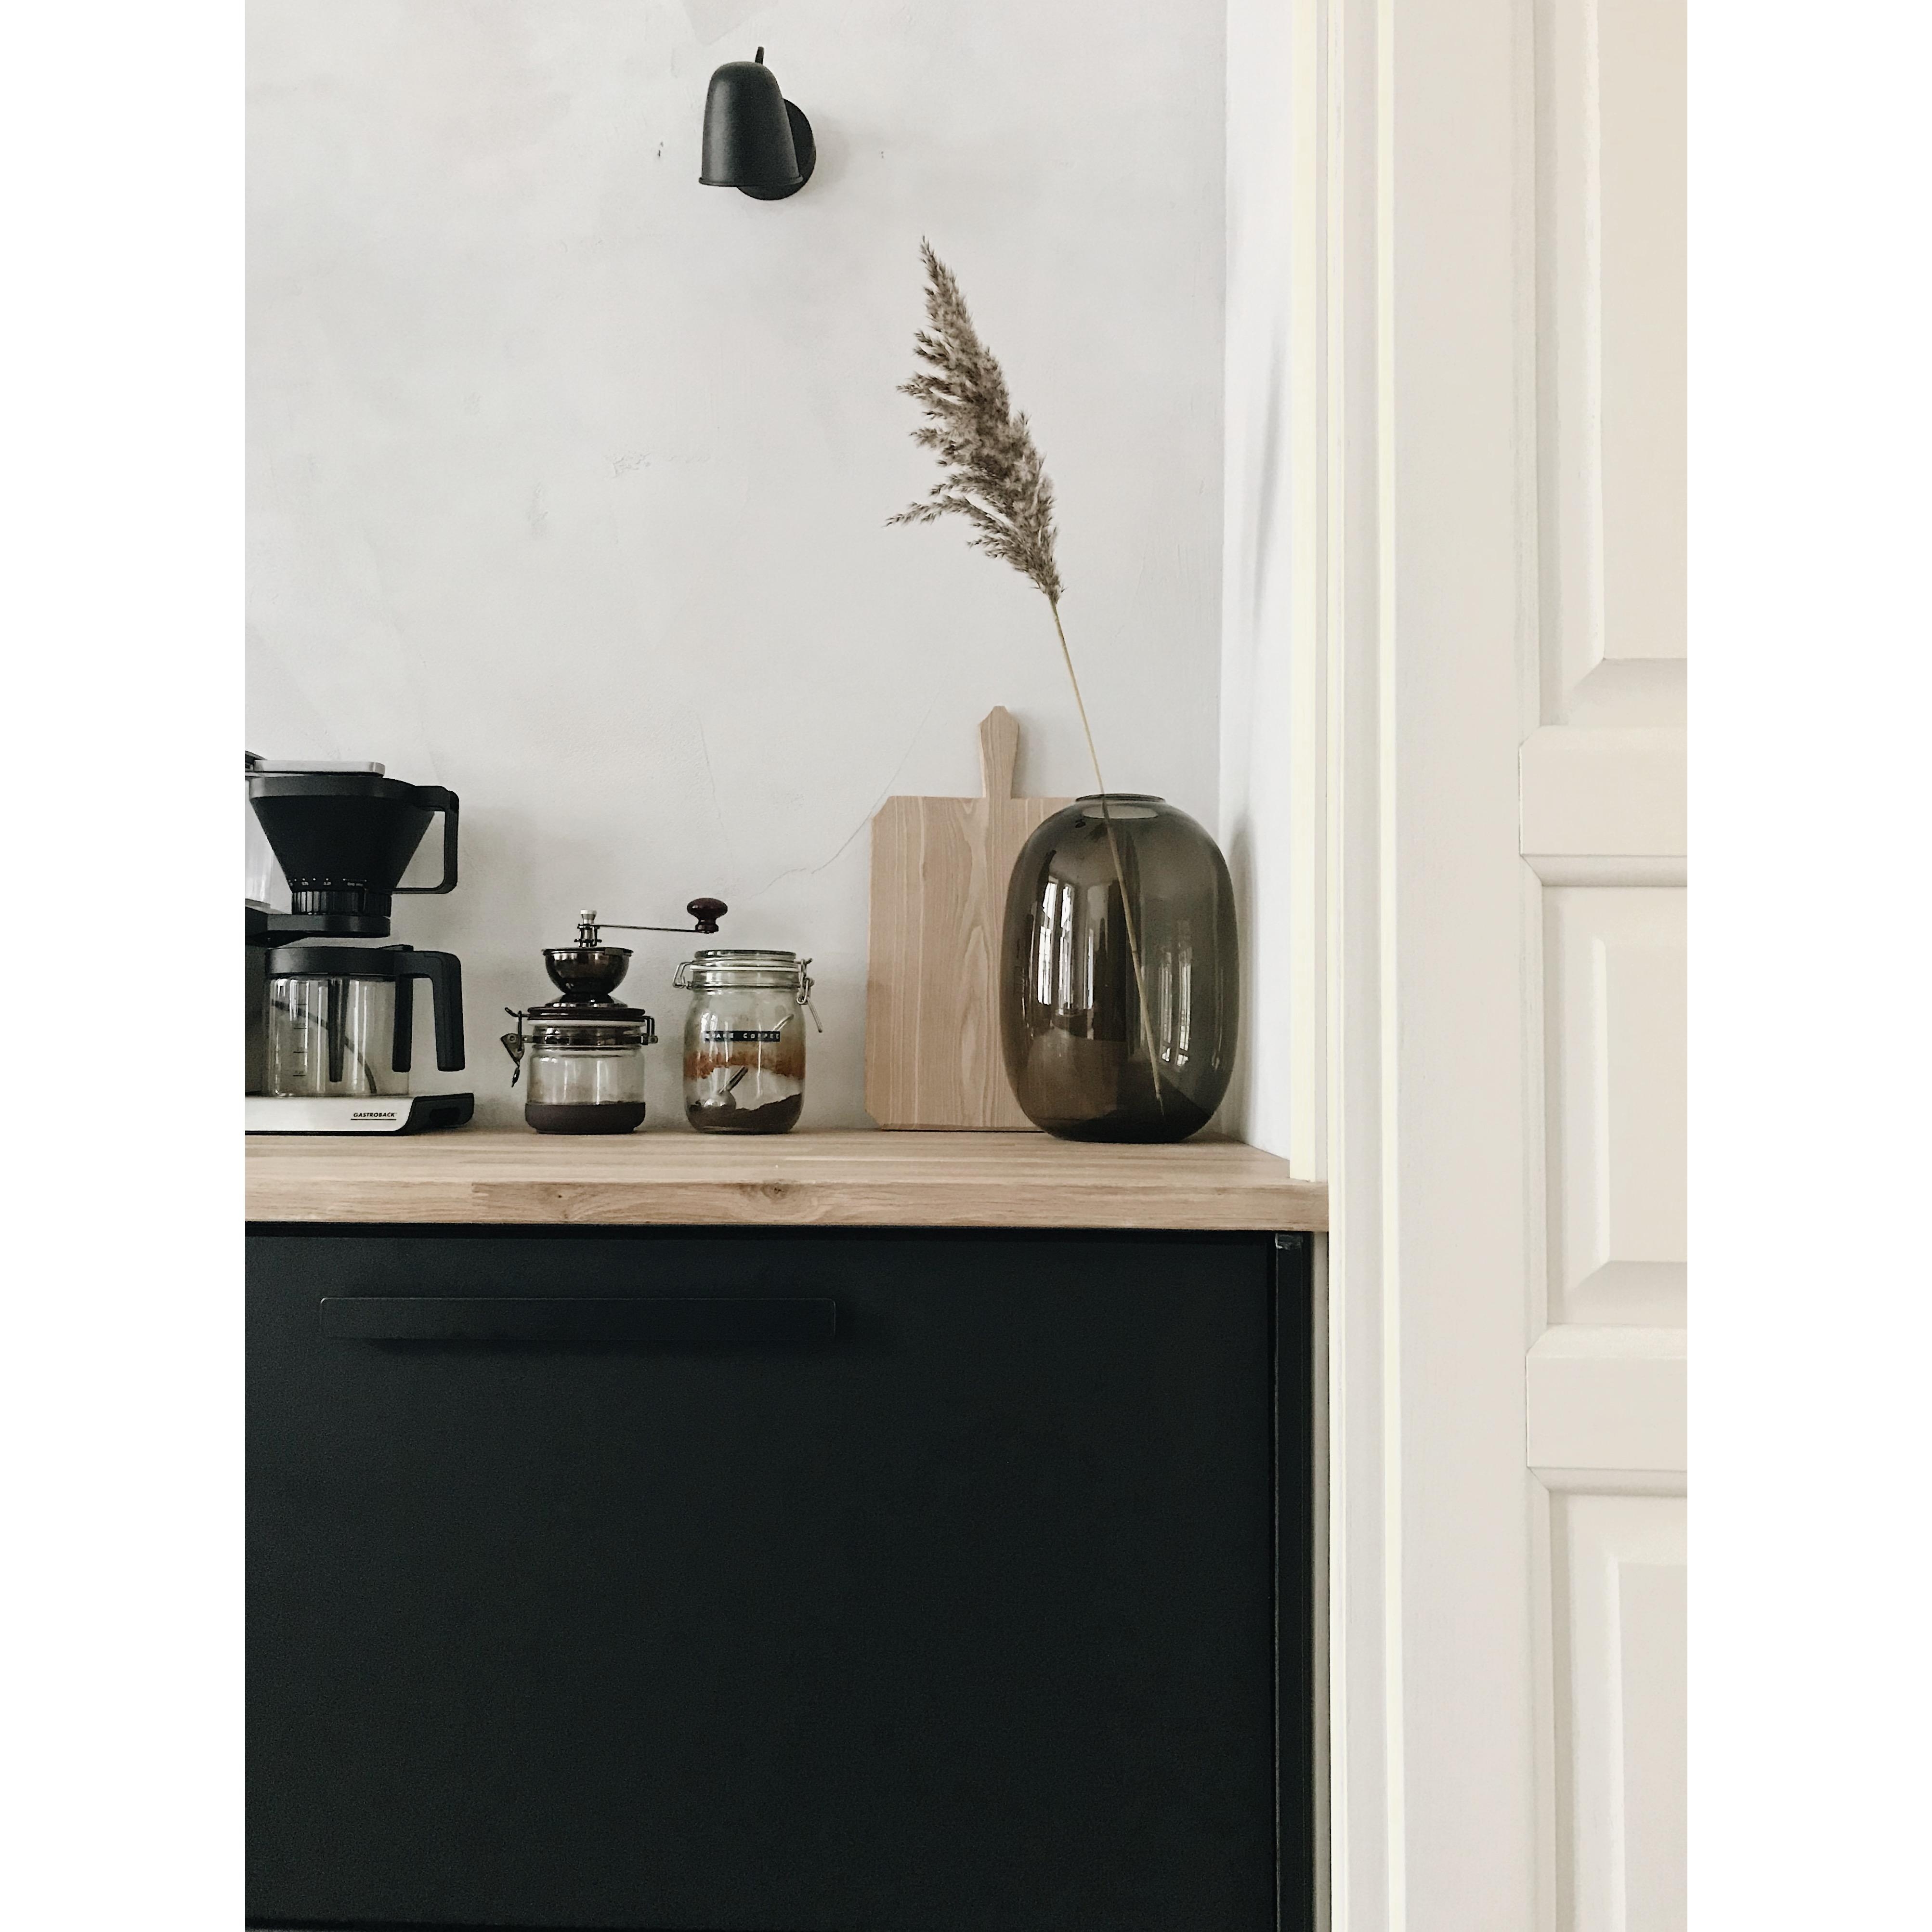 Unsere #Kaffeeecke. Eichenholz, Einmachgläser und Metall, so präsentiert sich unsere #Küche :) #ikeaküche #schwarzeküche